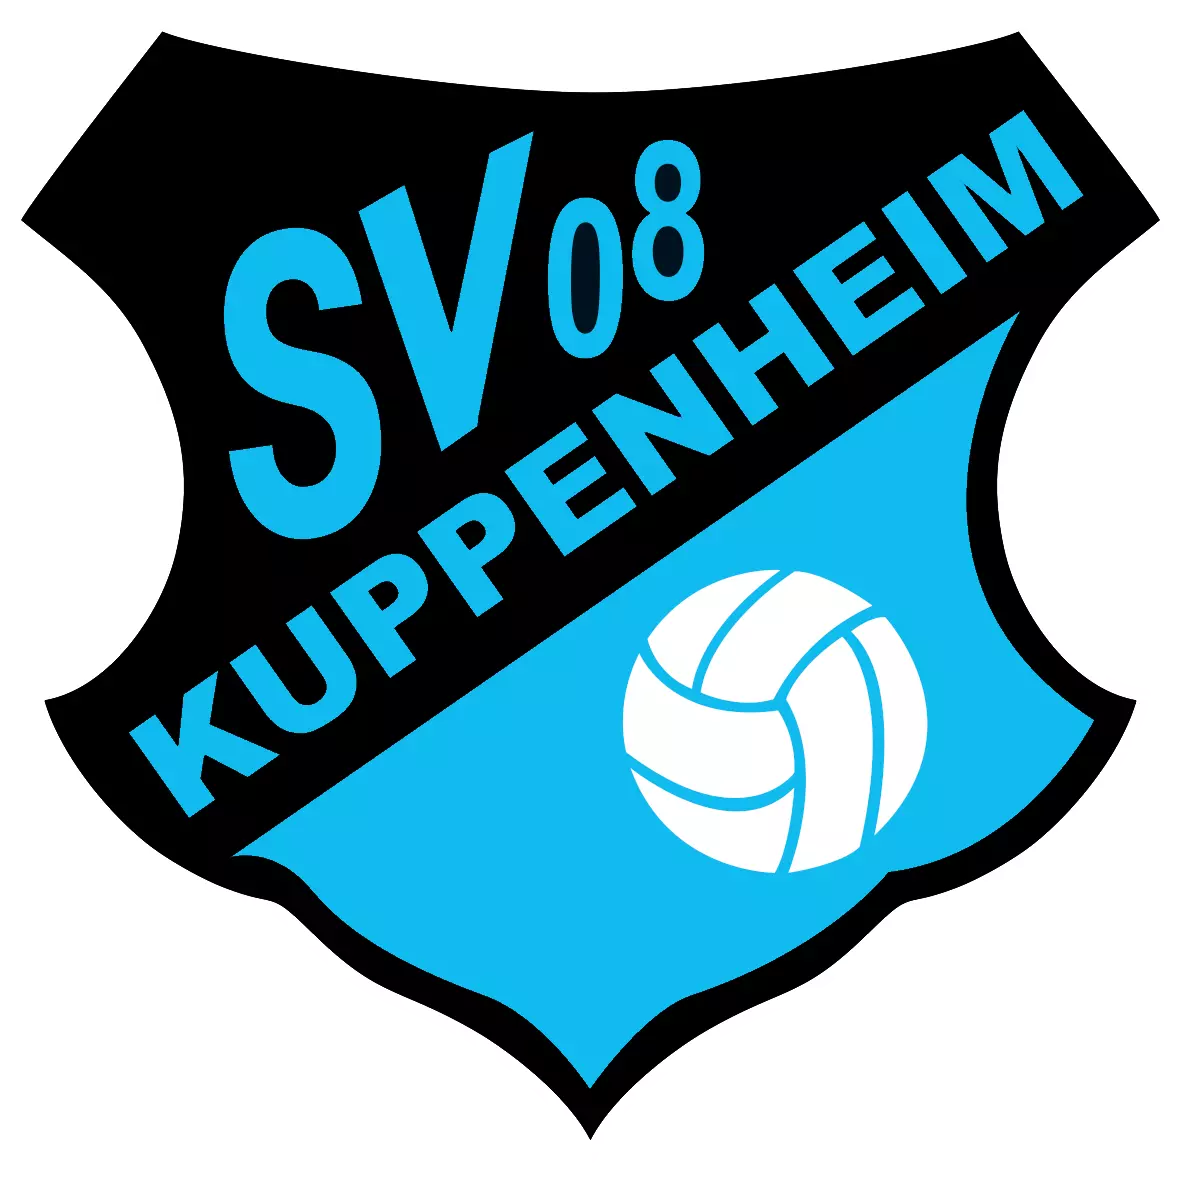 (c) Sv08-kuppenheim.de